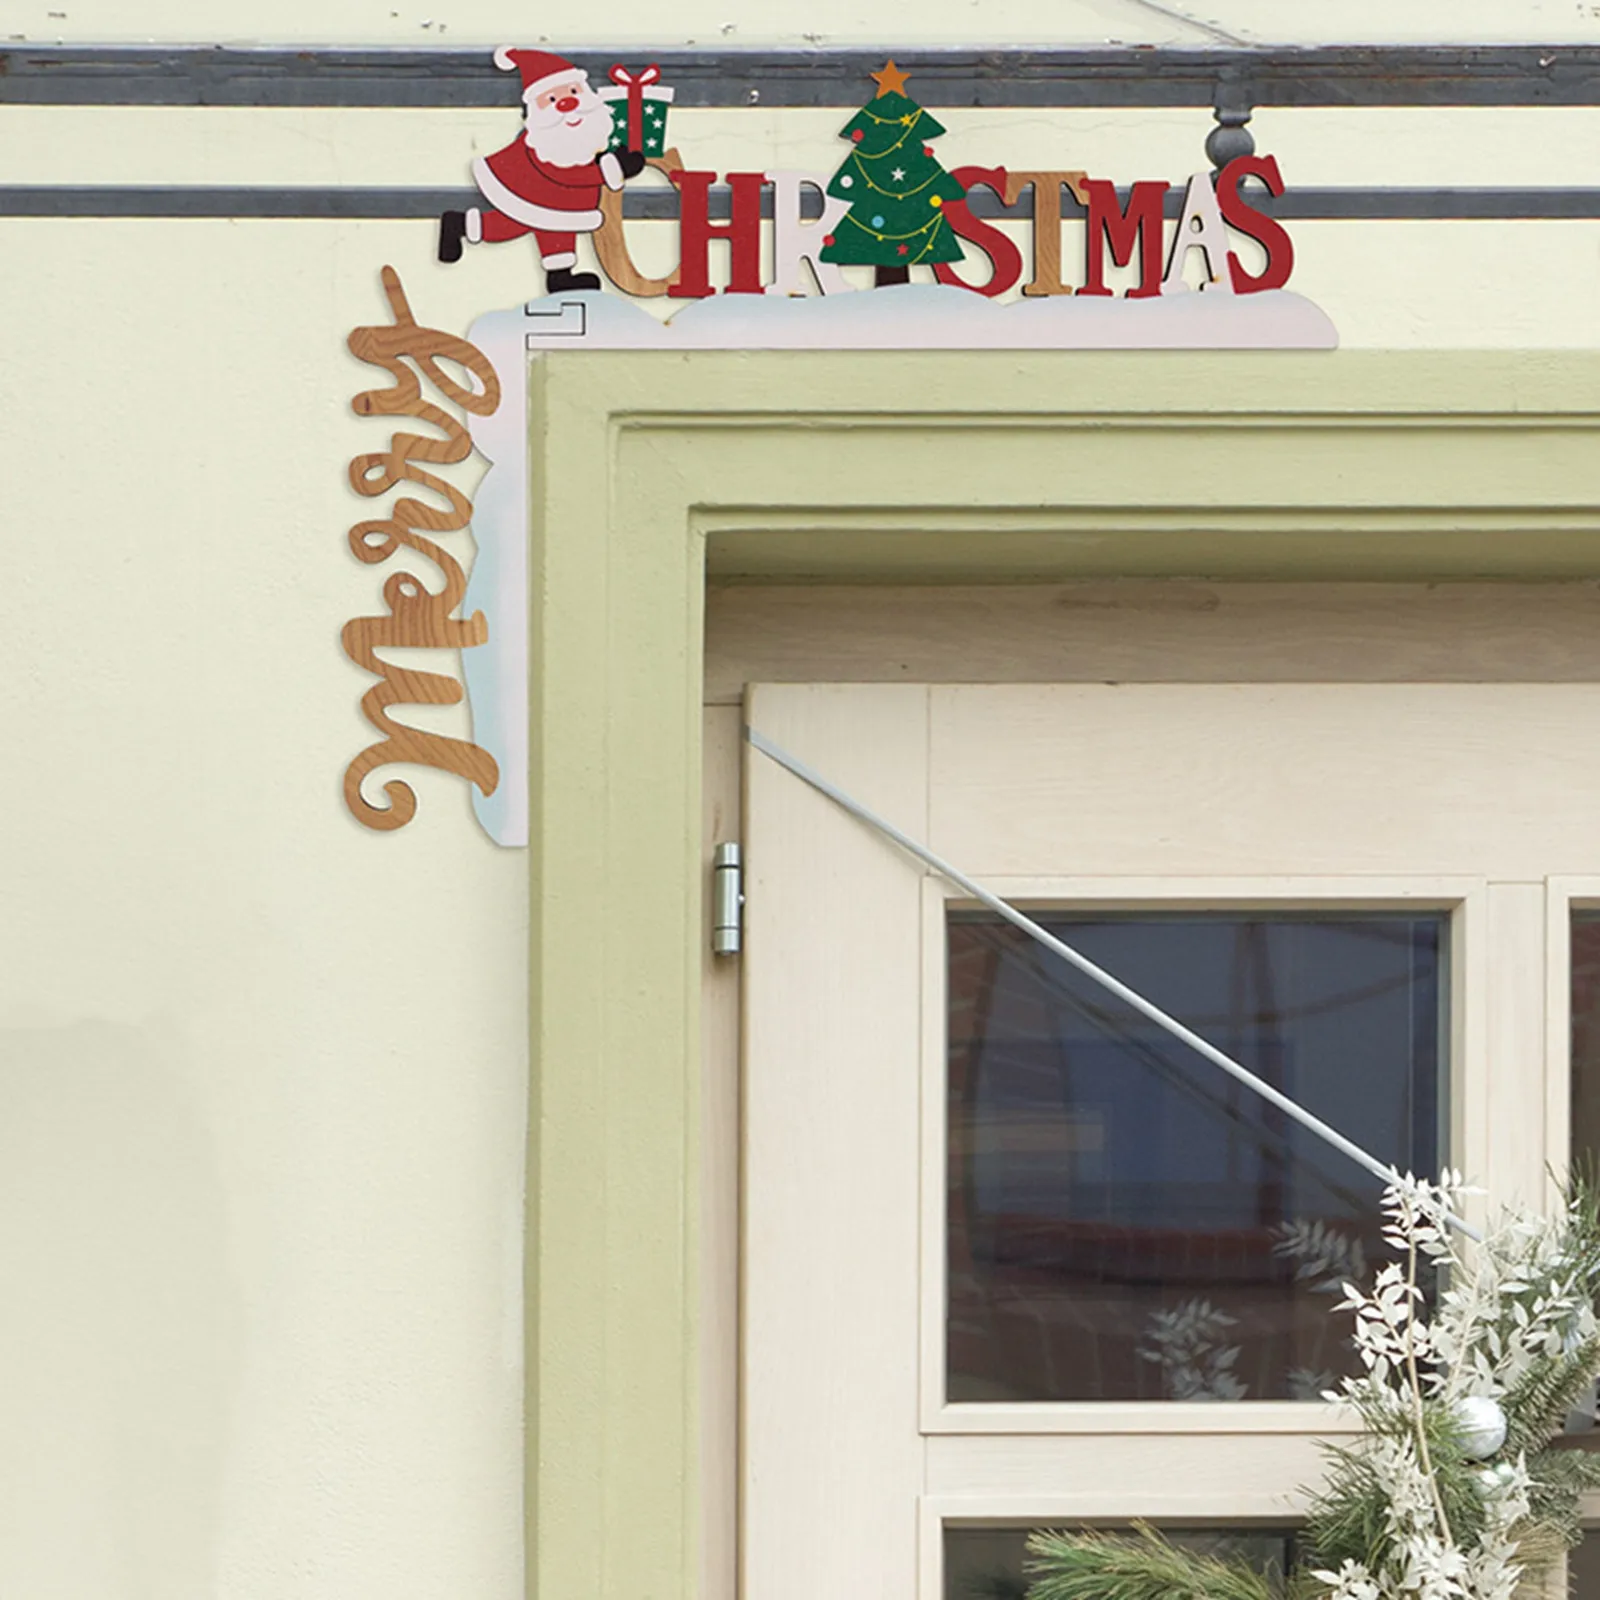 

2023 мультяшное Рождественское украшение для дверной рамы, Санта-Клаус, ангел, лось, деревянное Рождественское украшение для двери, Угловое украшение для дома, Рождественское украшение